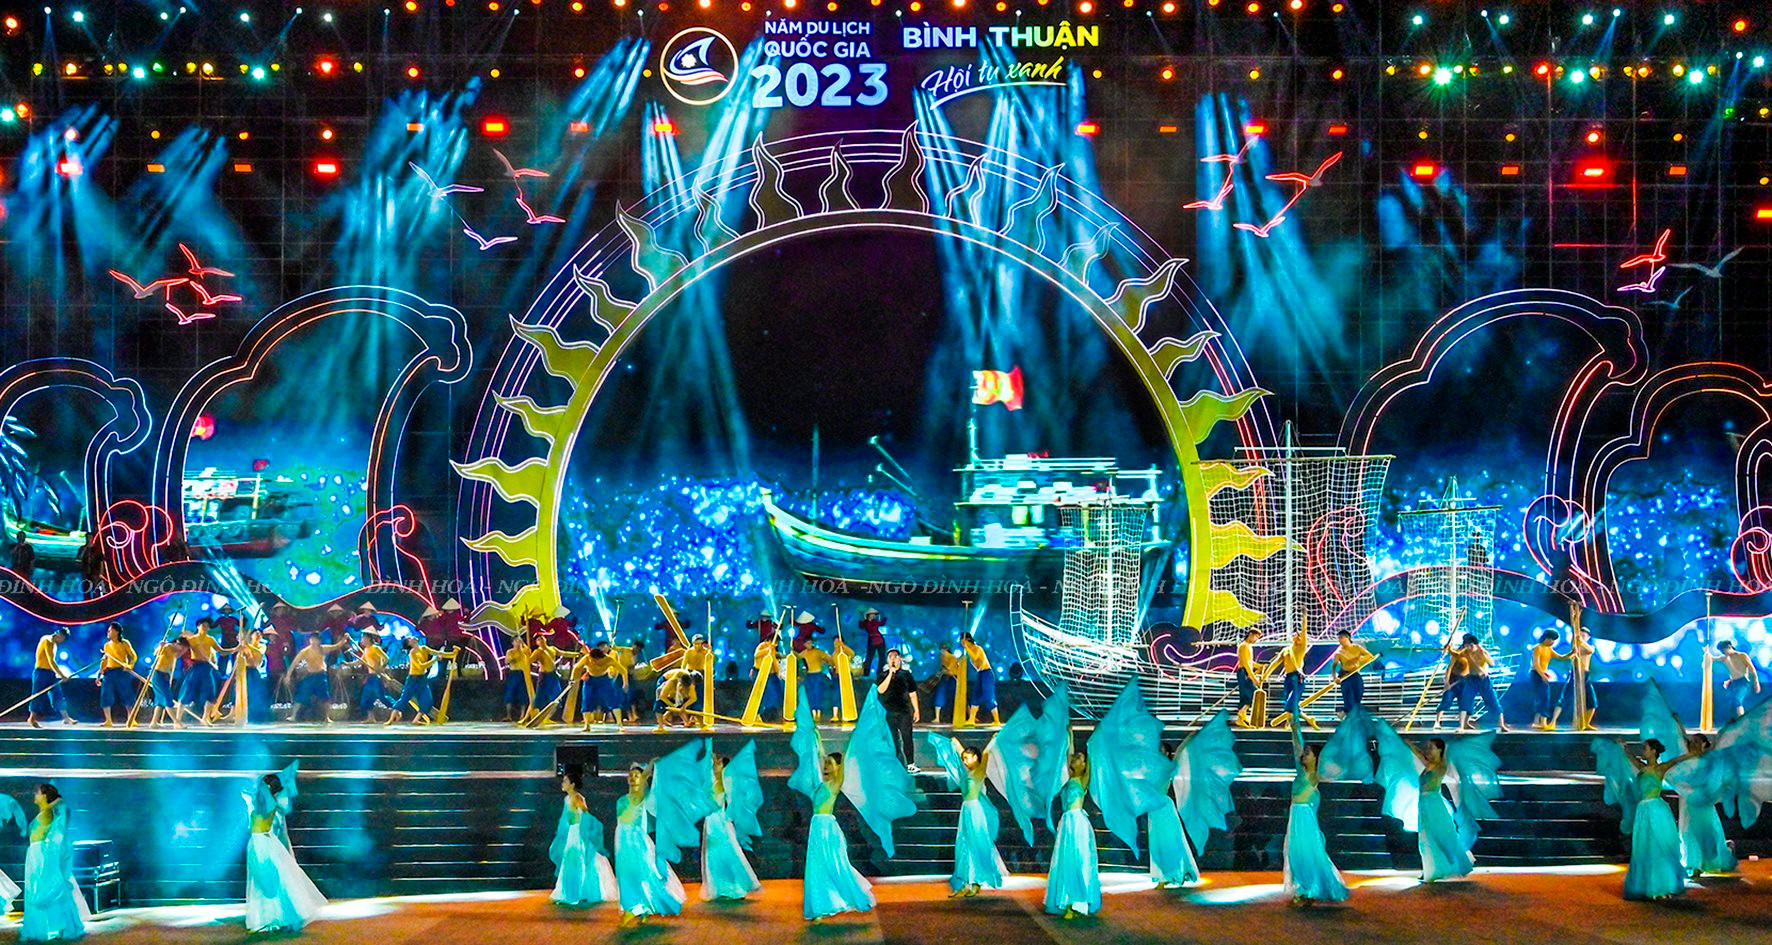 Lễ Khai mạc Năm du lịch quốc gia 2023 với chủ đề “Bình Thuận - Hội tụ xanh” diễn ra tối 25-3 tại TP. Phan Thiết, tỉnh Bình Thuận.